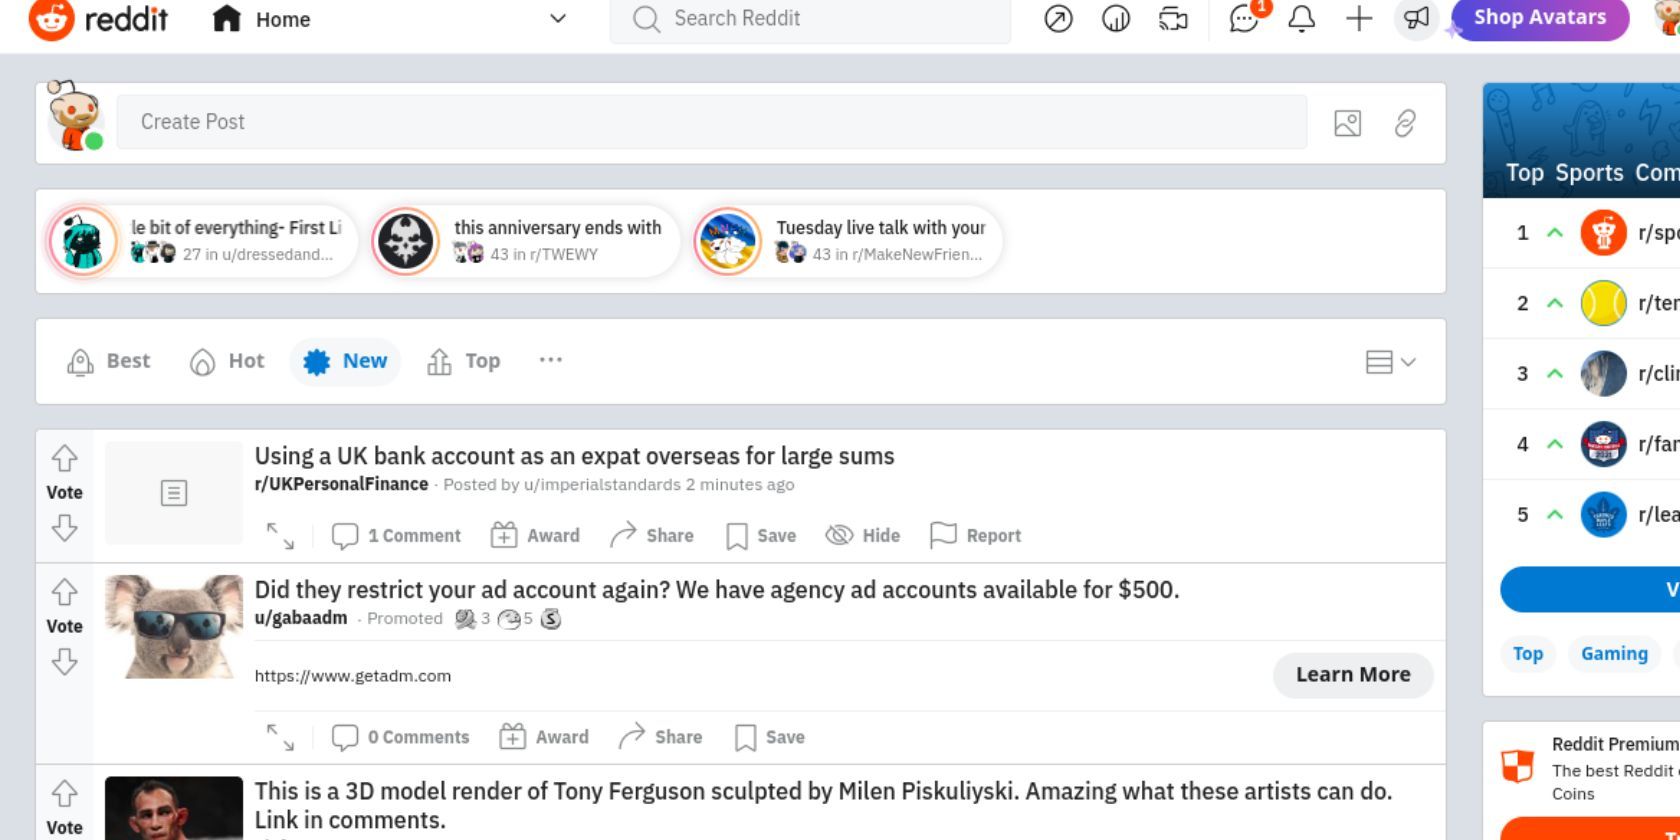 Cómo personalizar tu feed de inicio de Reddit 5 consejos Noticias Movil